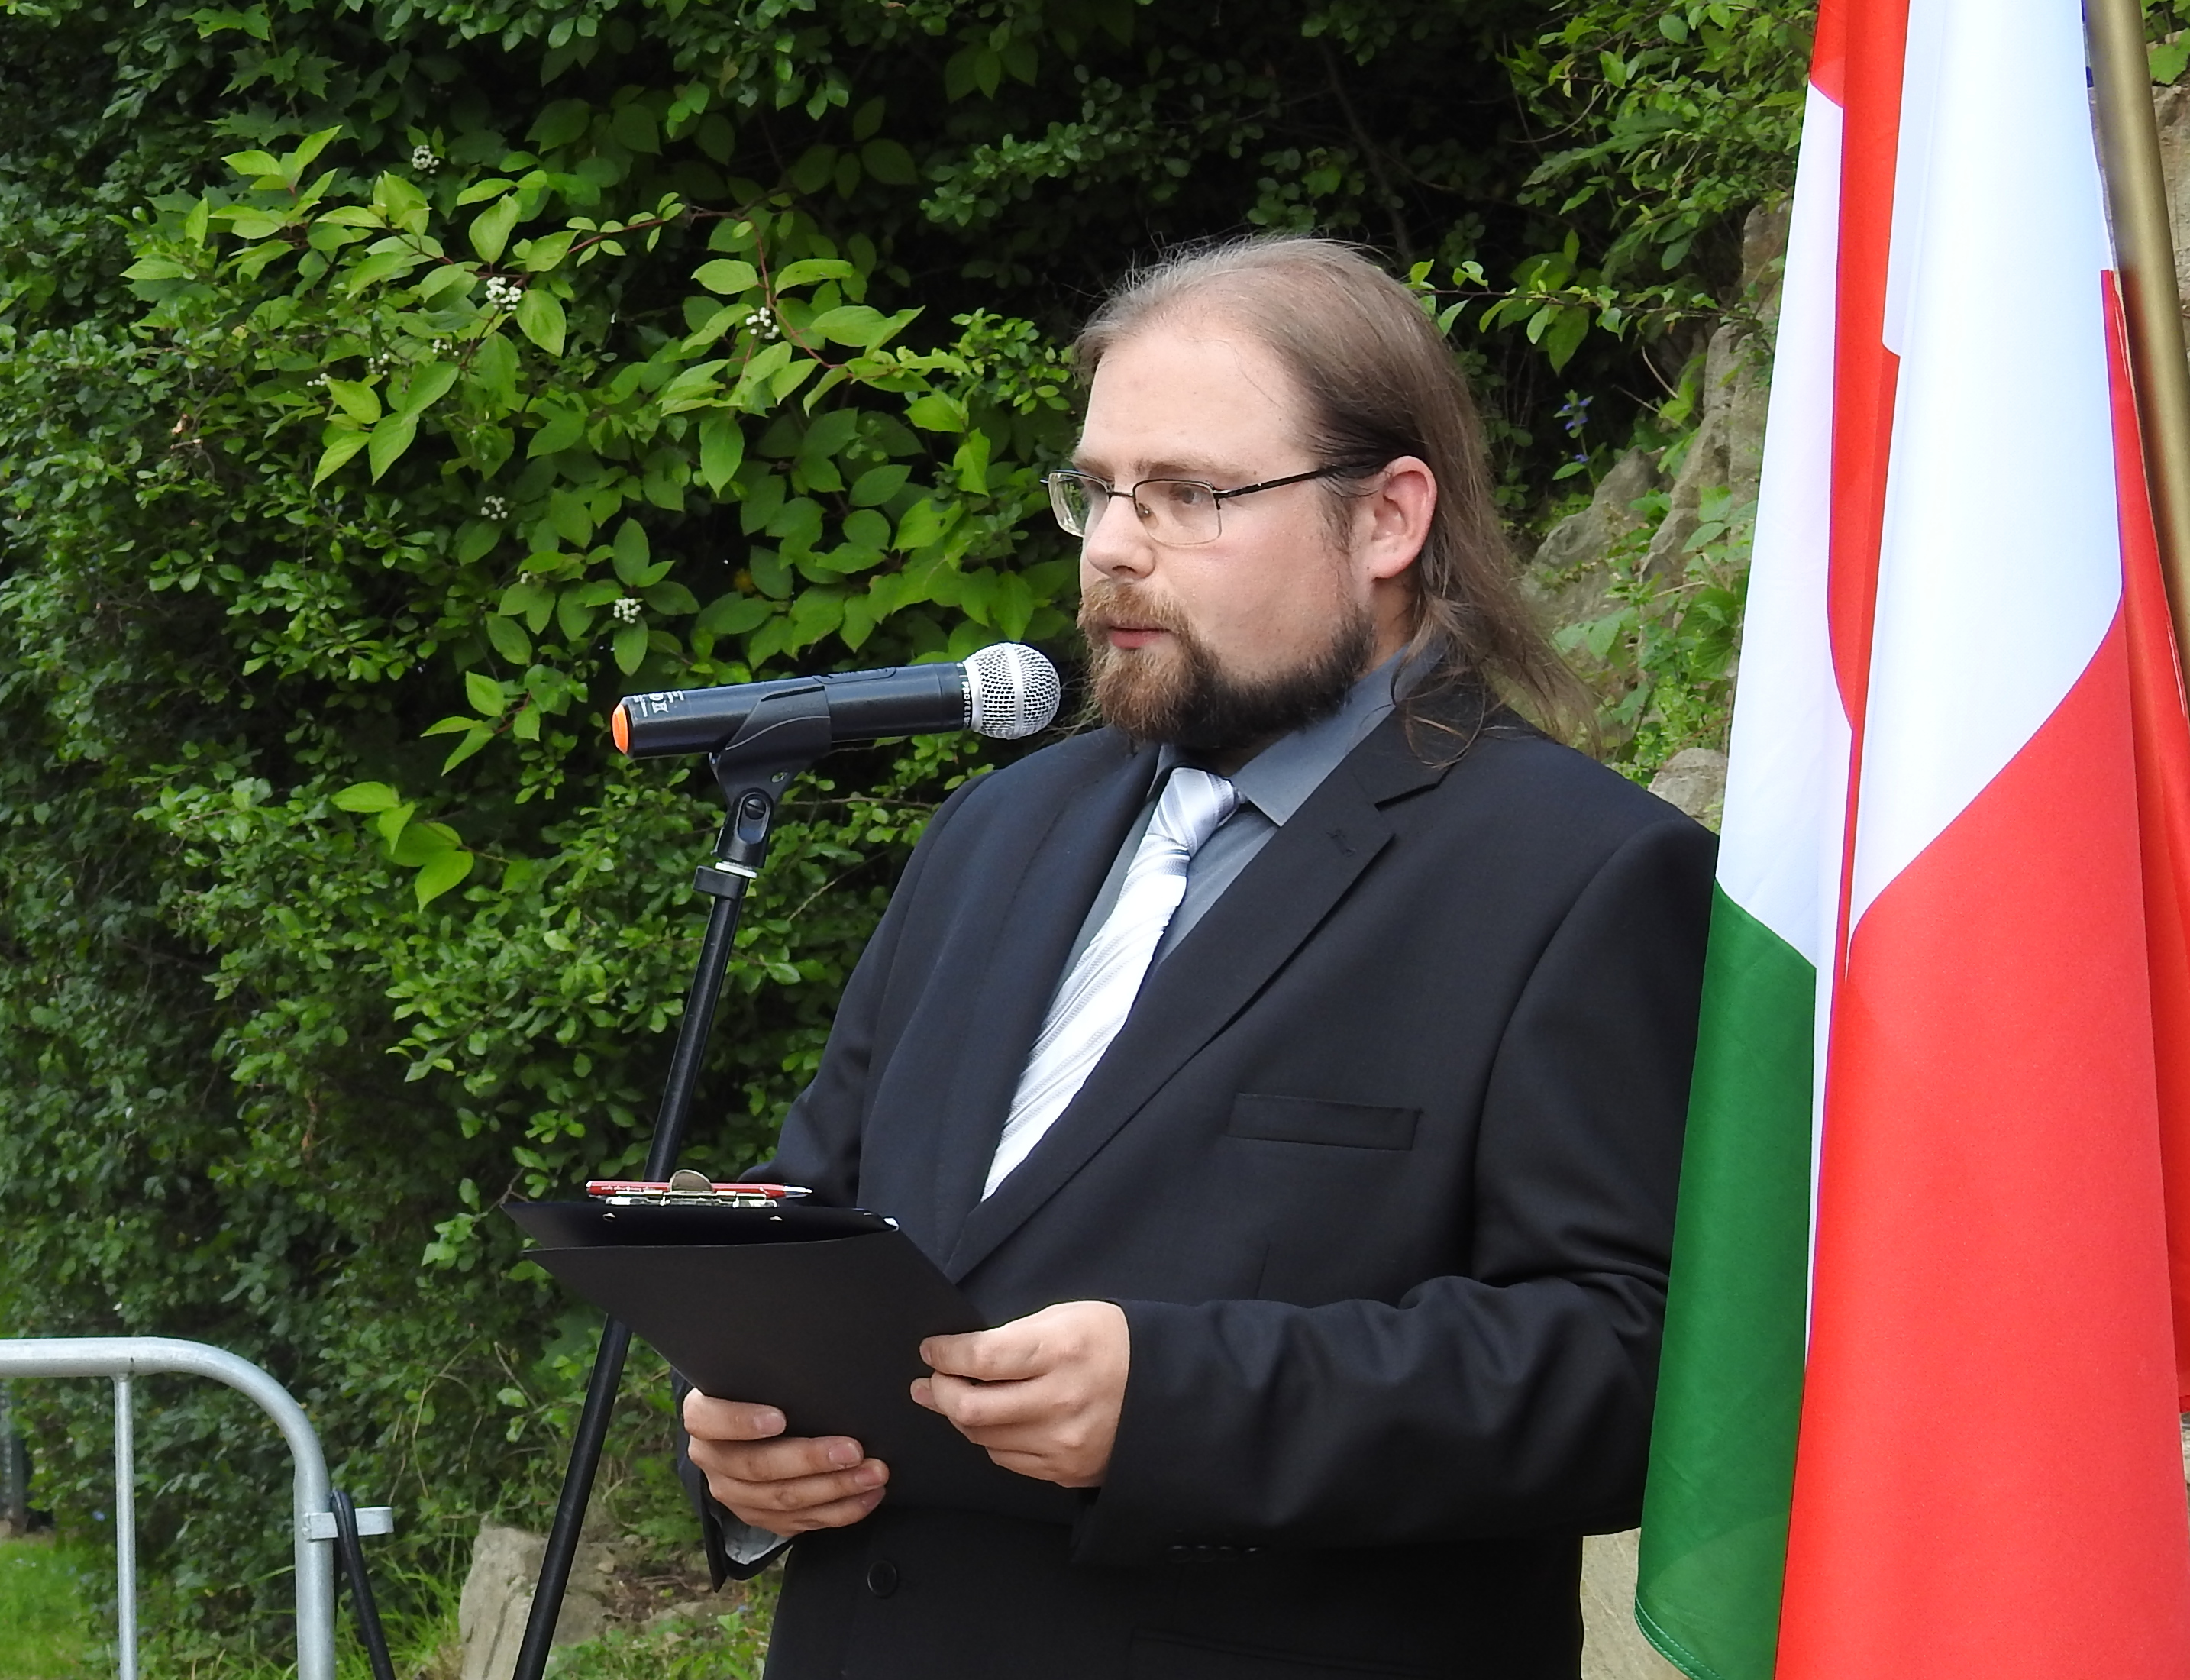 Zdjęcie przedstawia mężczyznę w okularach i czarnym garniturze, mówiącego do mikrofonu, w tle kolorowe flagi i drzewa.